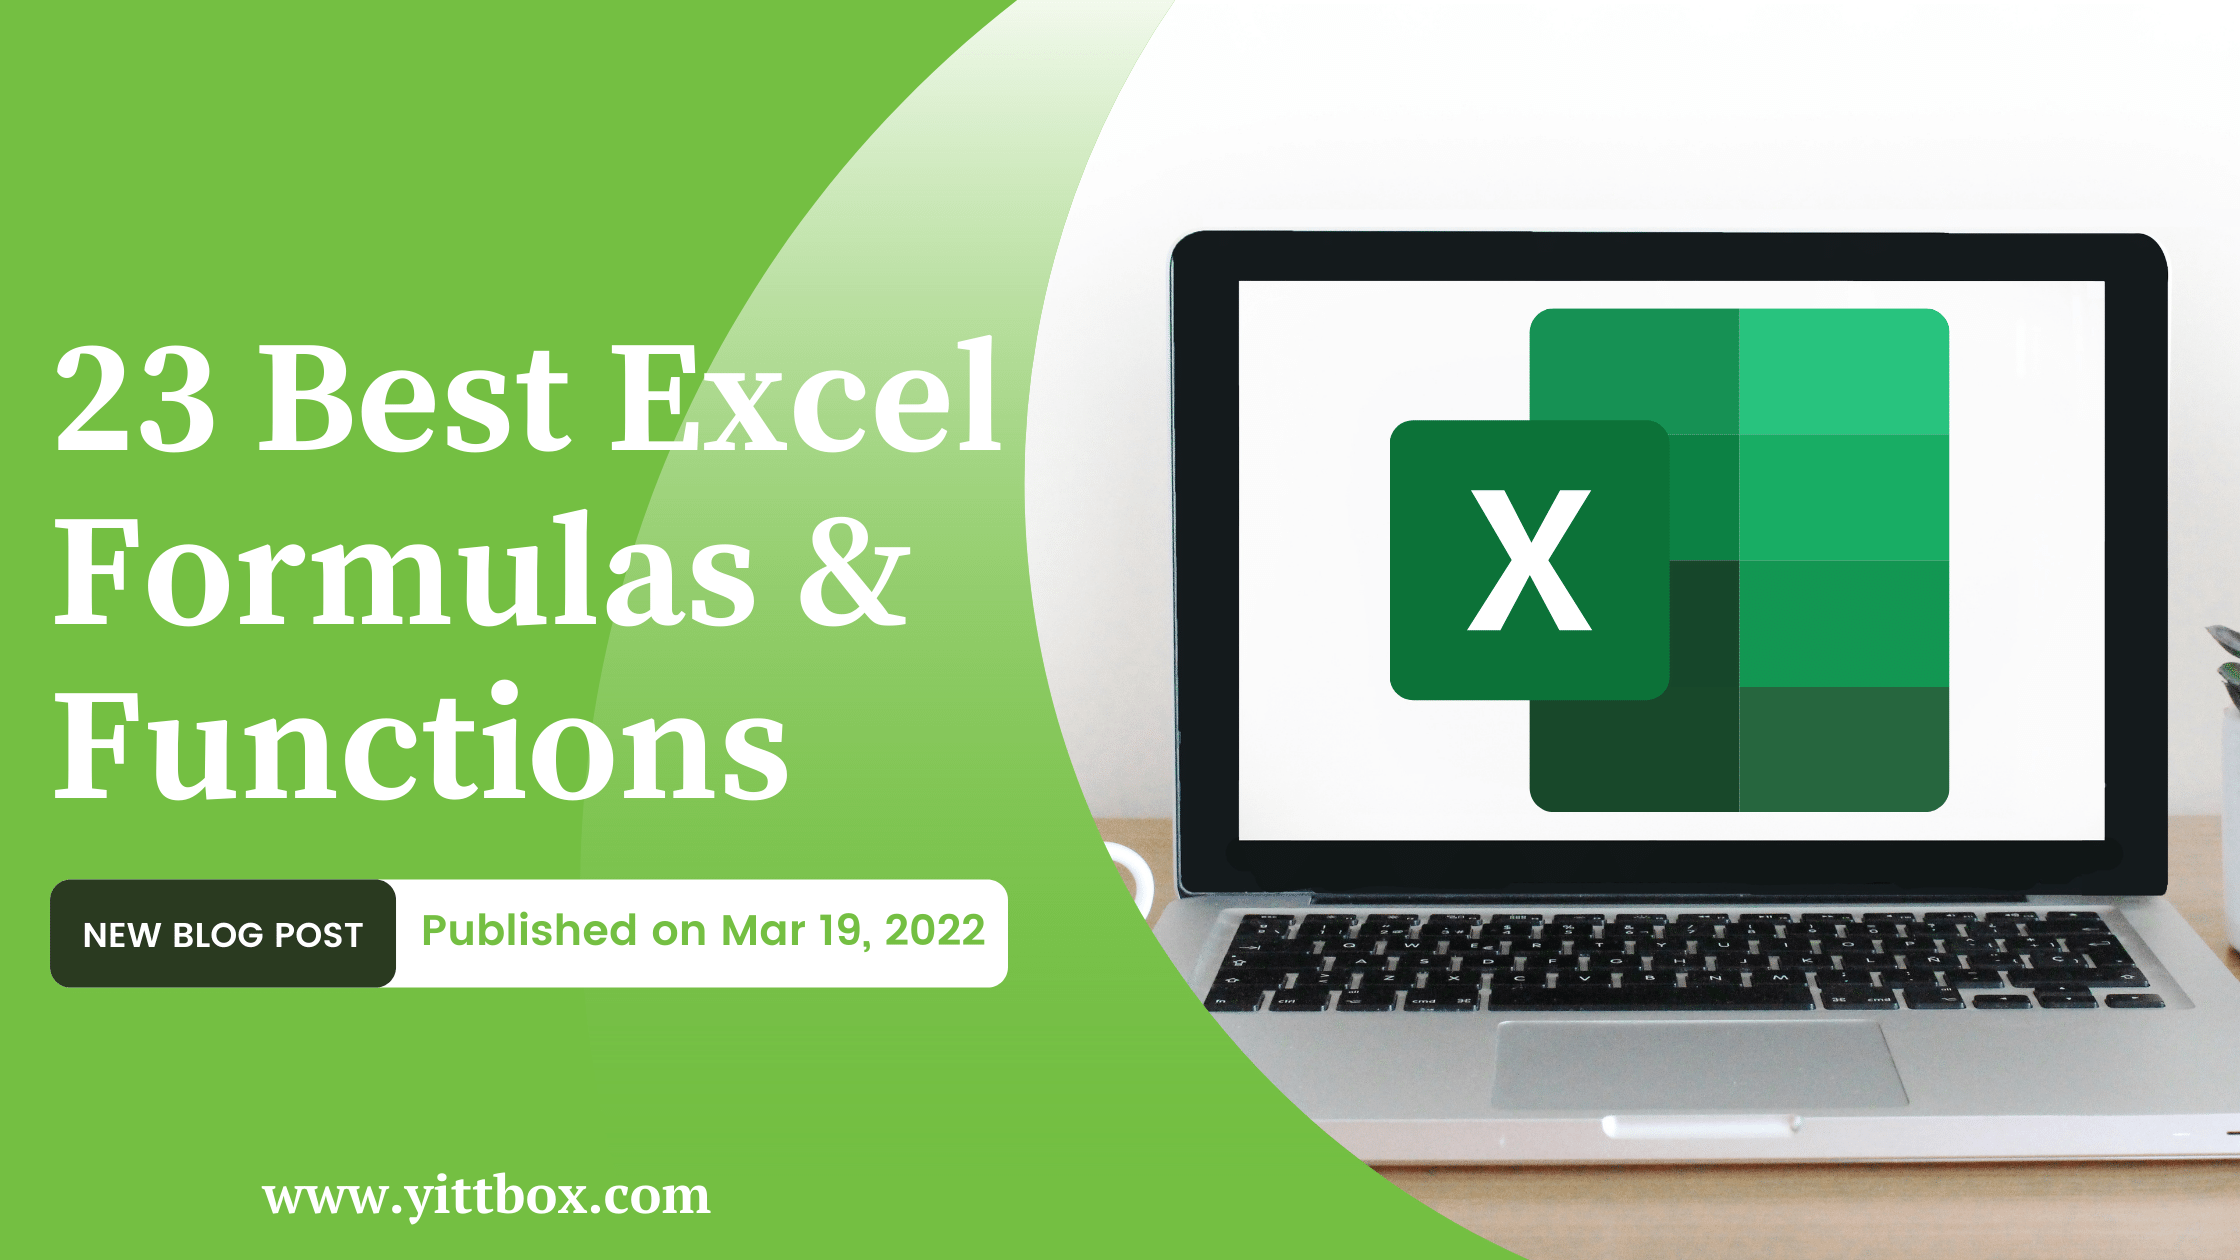 23 Best Excel Formulas & Functions